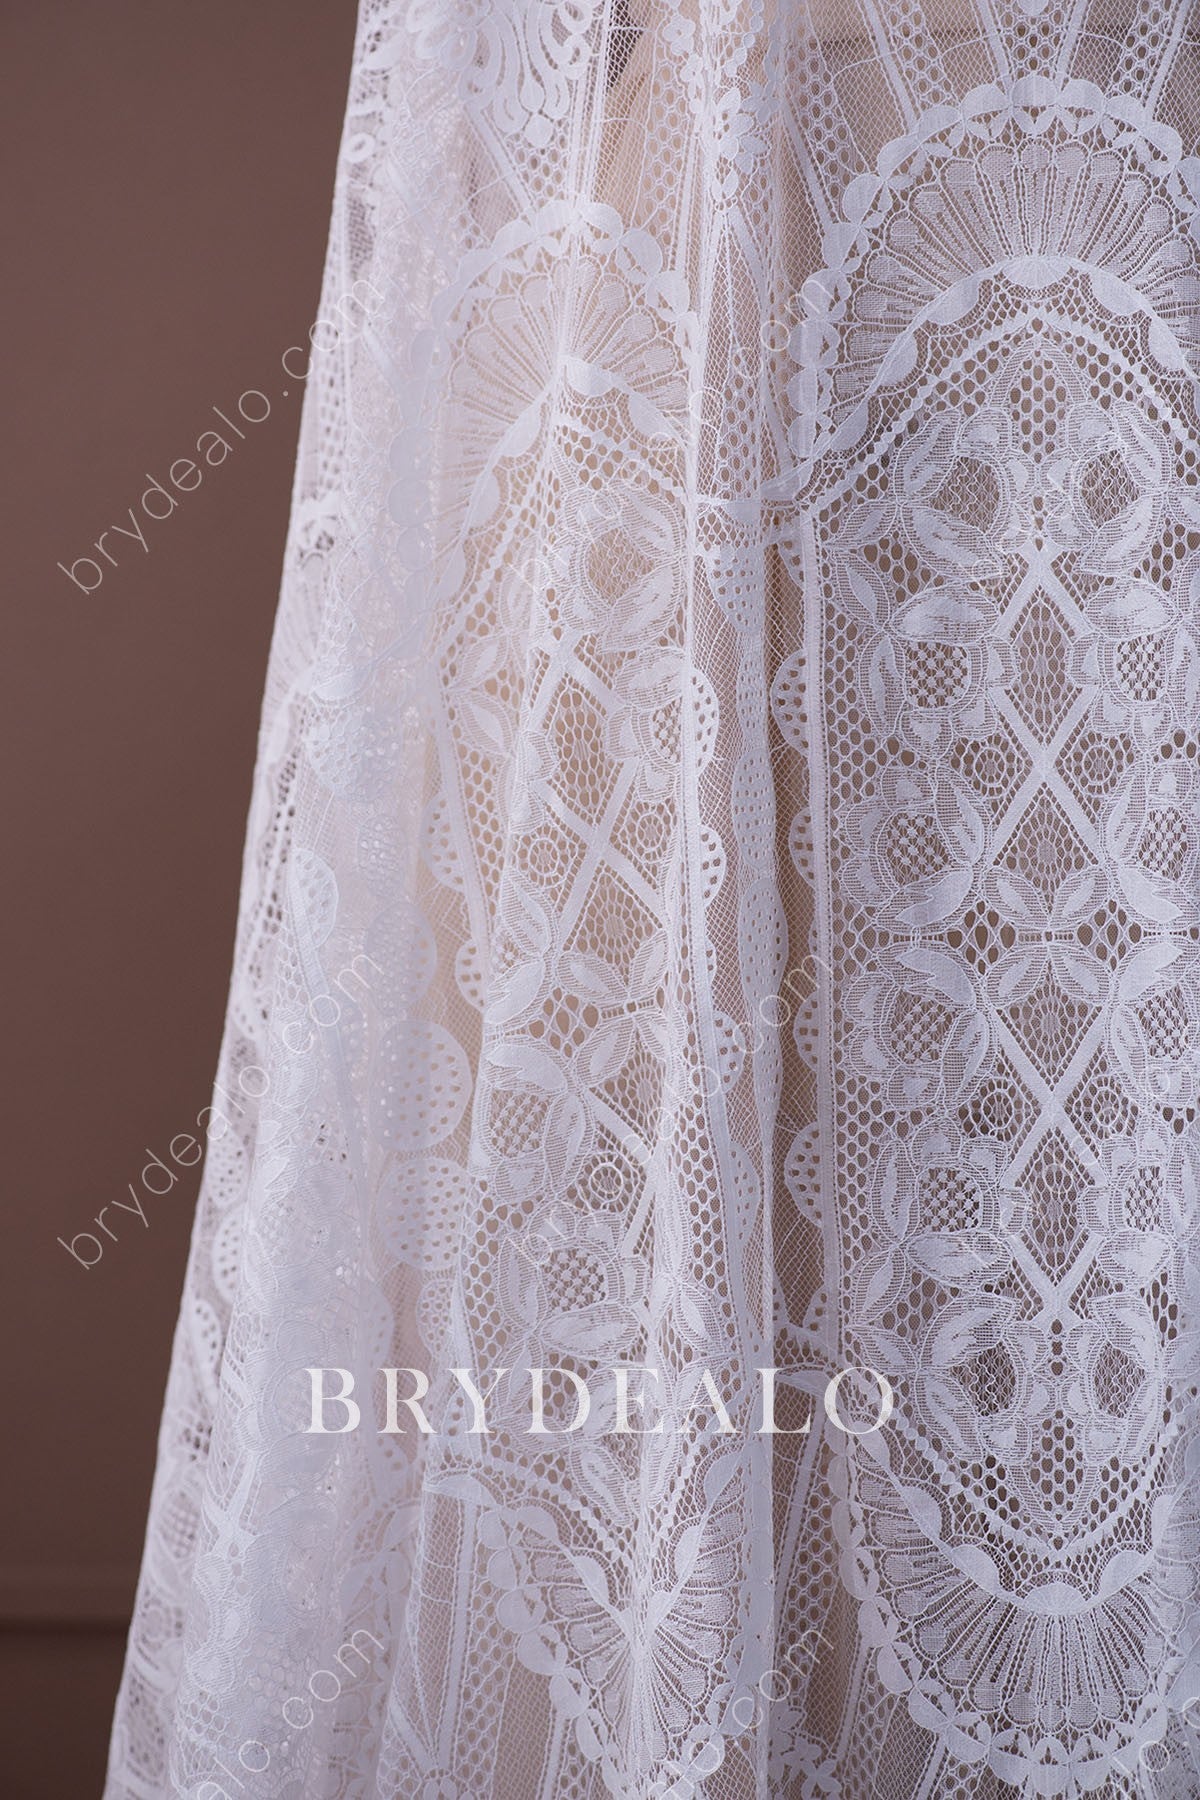  Pattern Crochet Bridal Lace Fabric